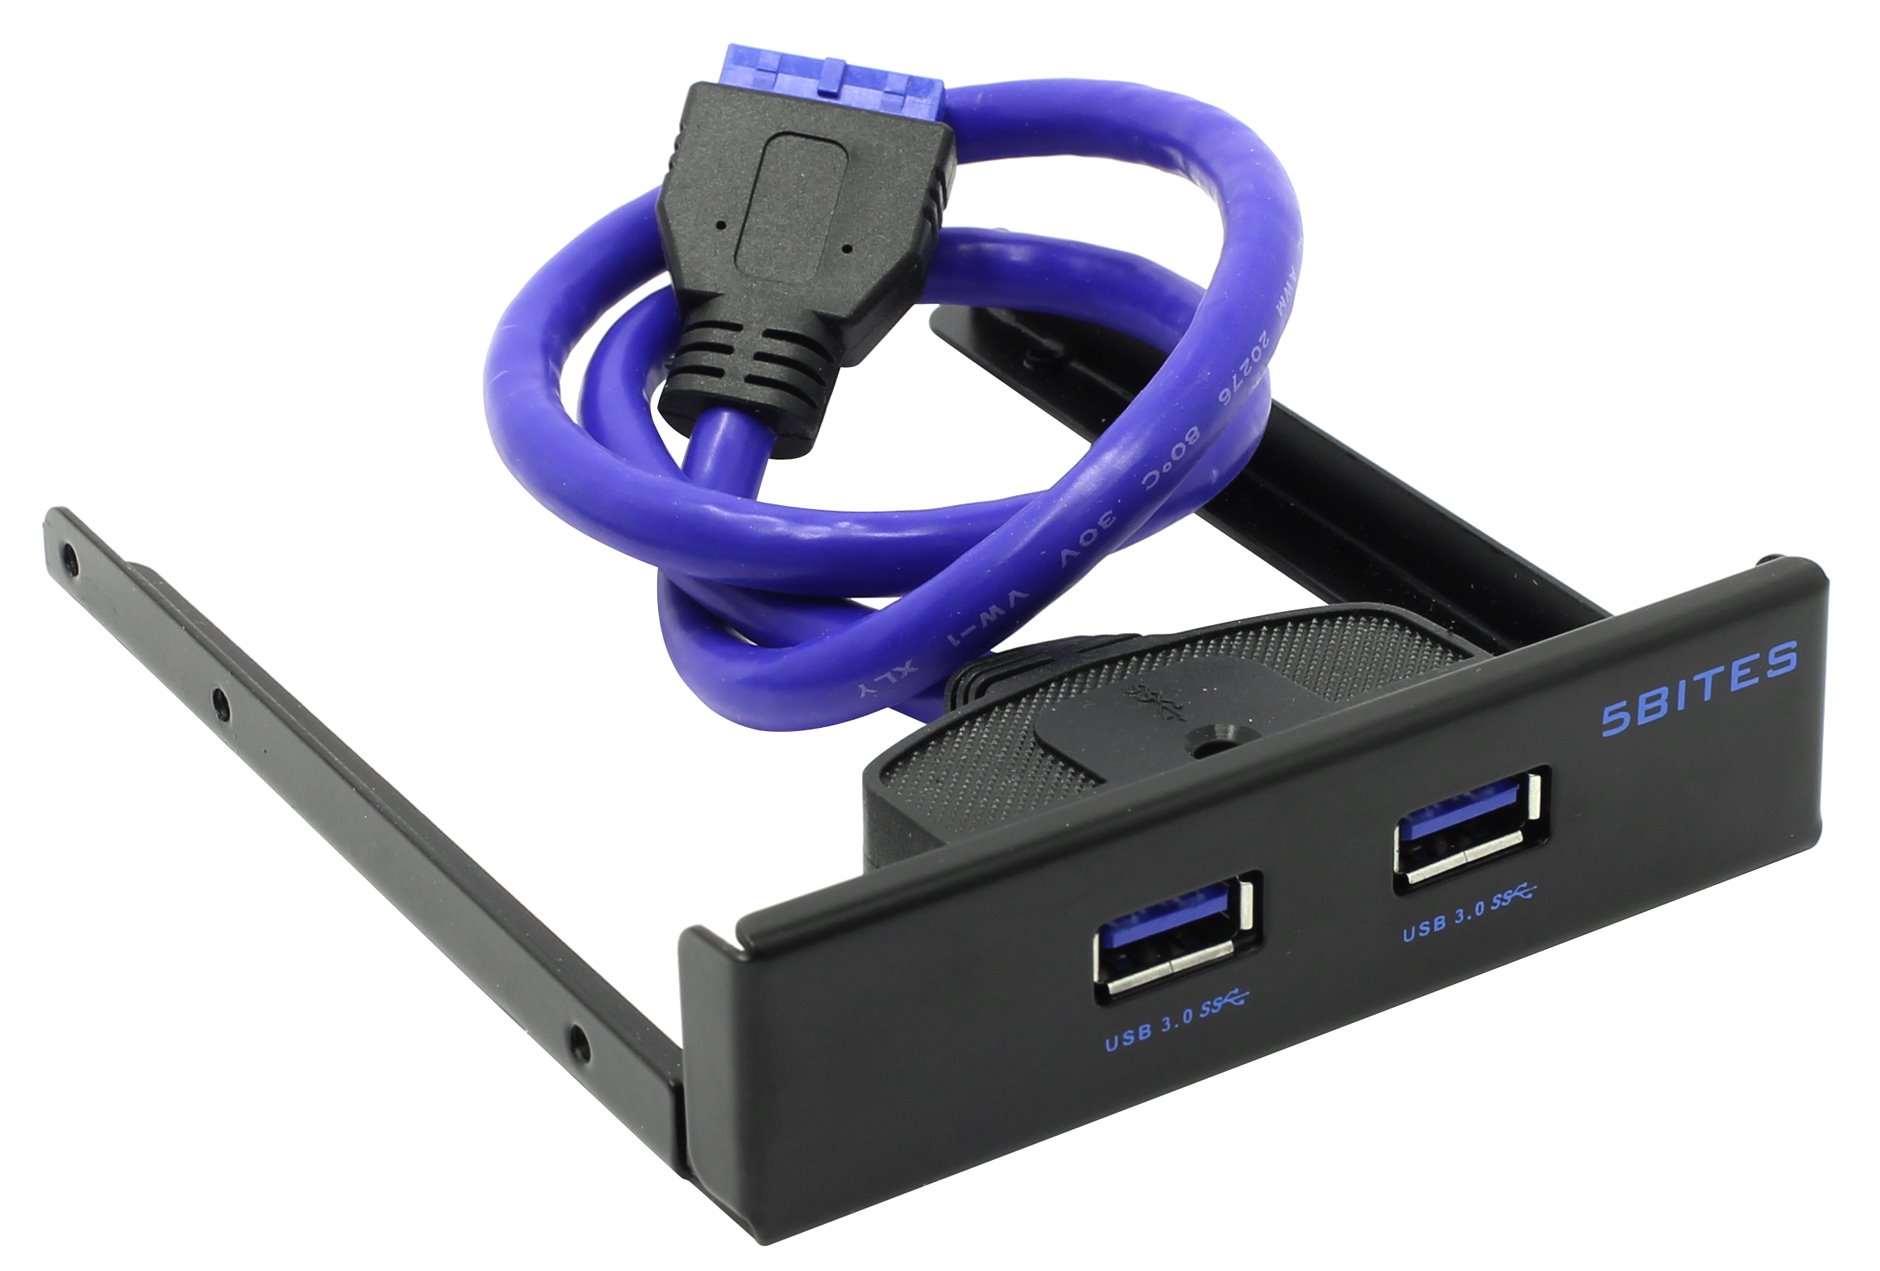 Usb 5.25. Планка портов на переднюю панель 3.5. Планка на переднюю панель 2 порта USB 3.0. Передняя планка USB 3 корпуса ПК. Планка USB 2.0 на 2 порта в переднюю панель системного блока.